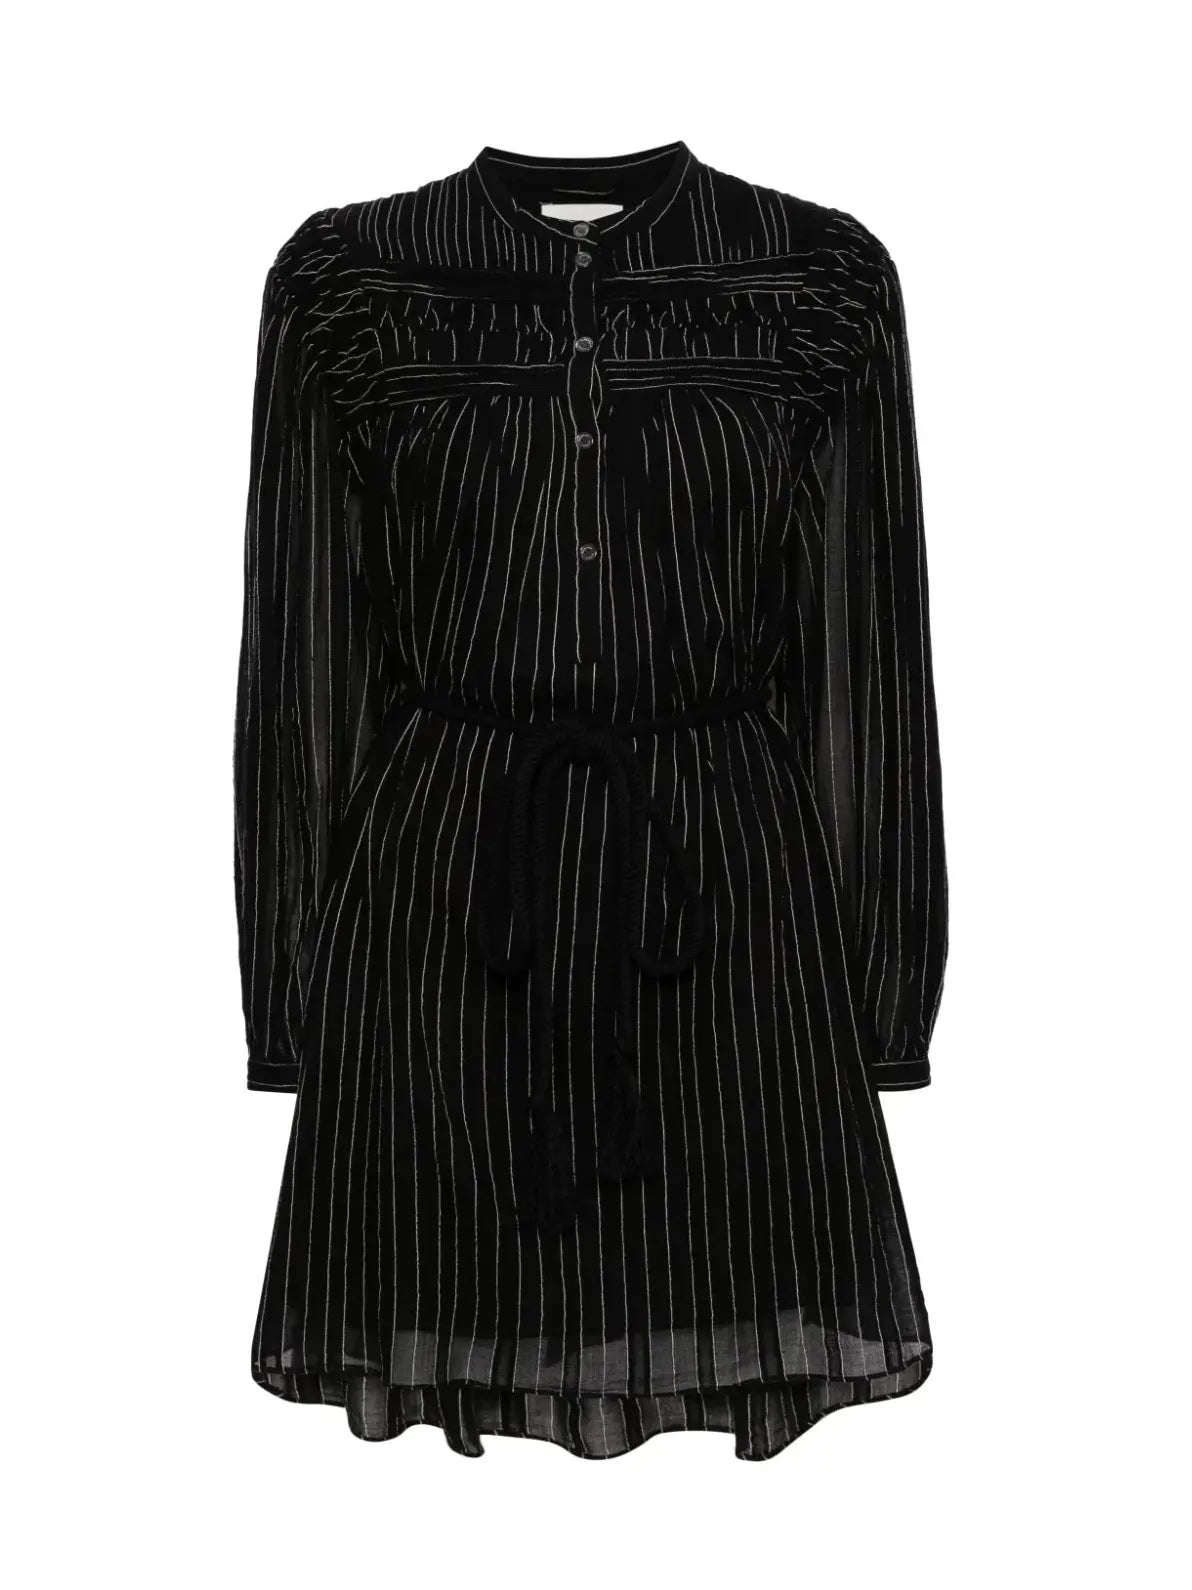 LEOZI dress, faded black